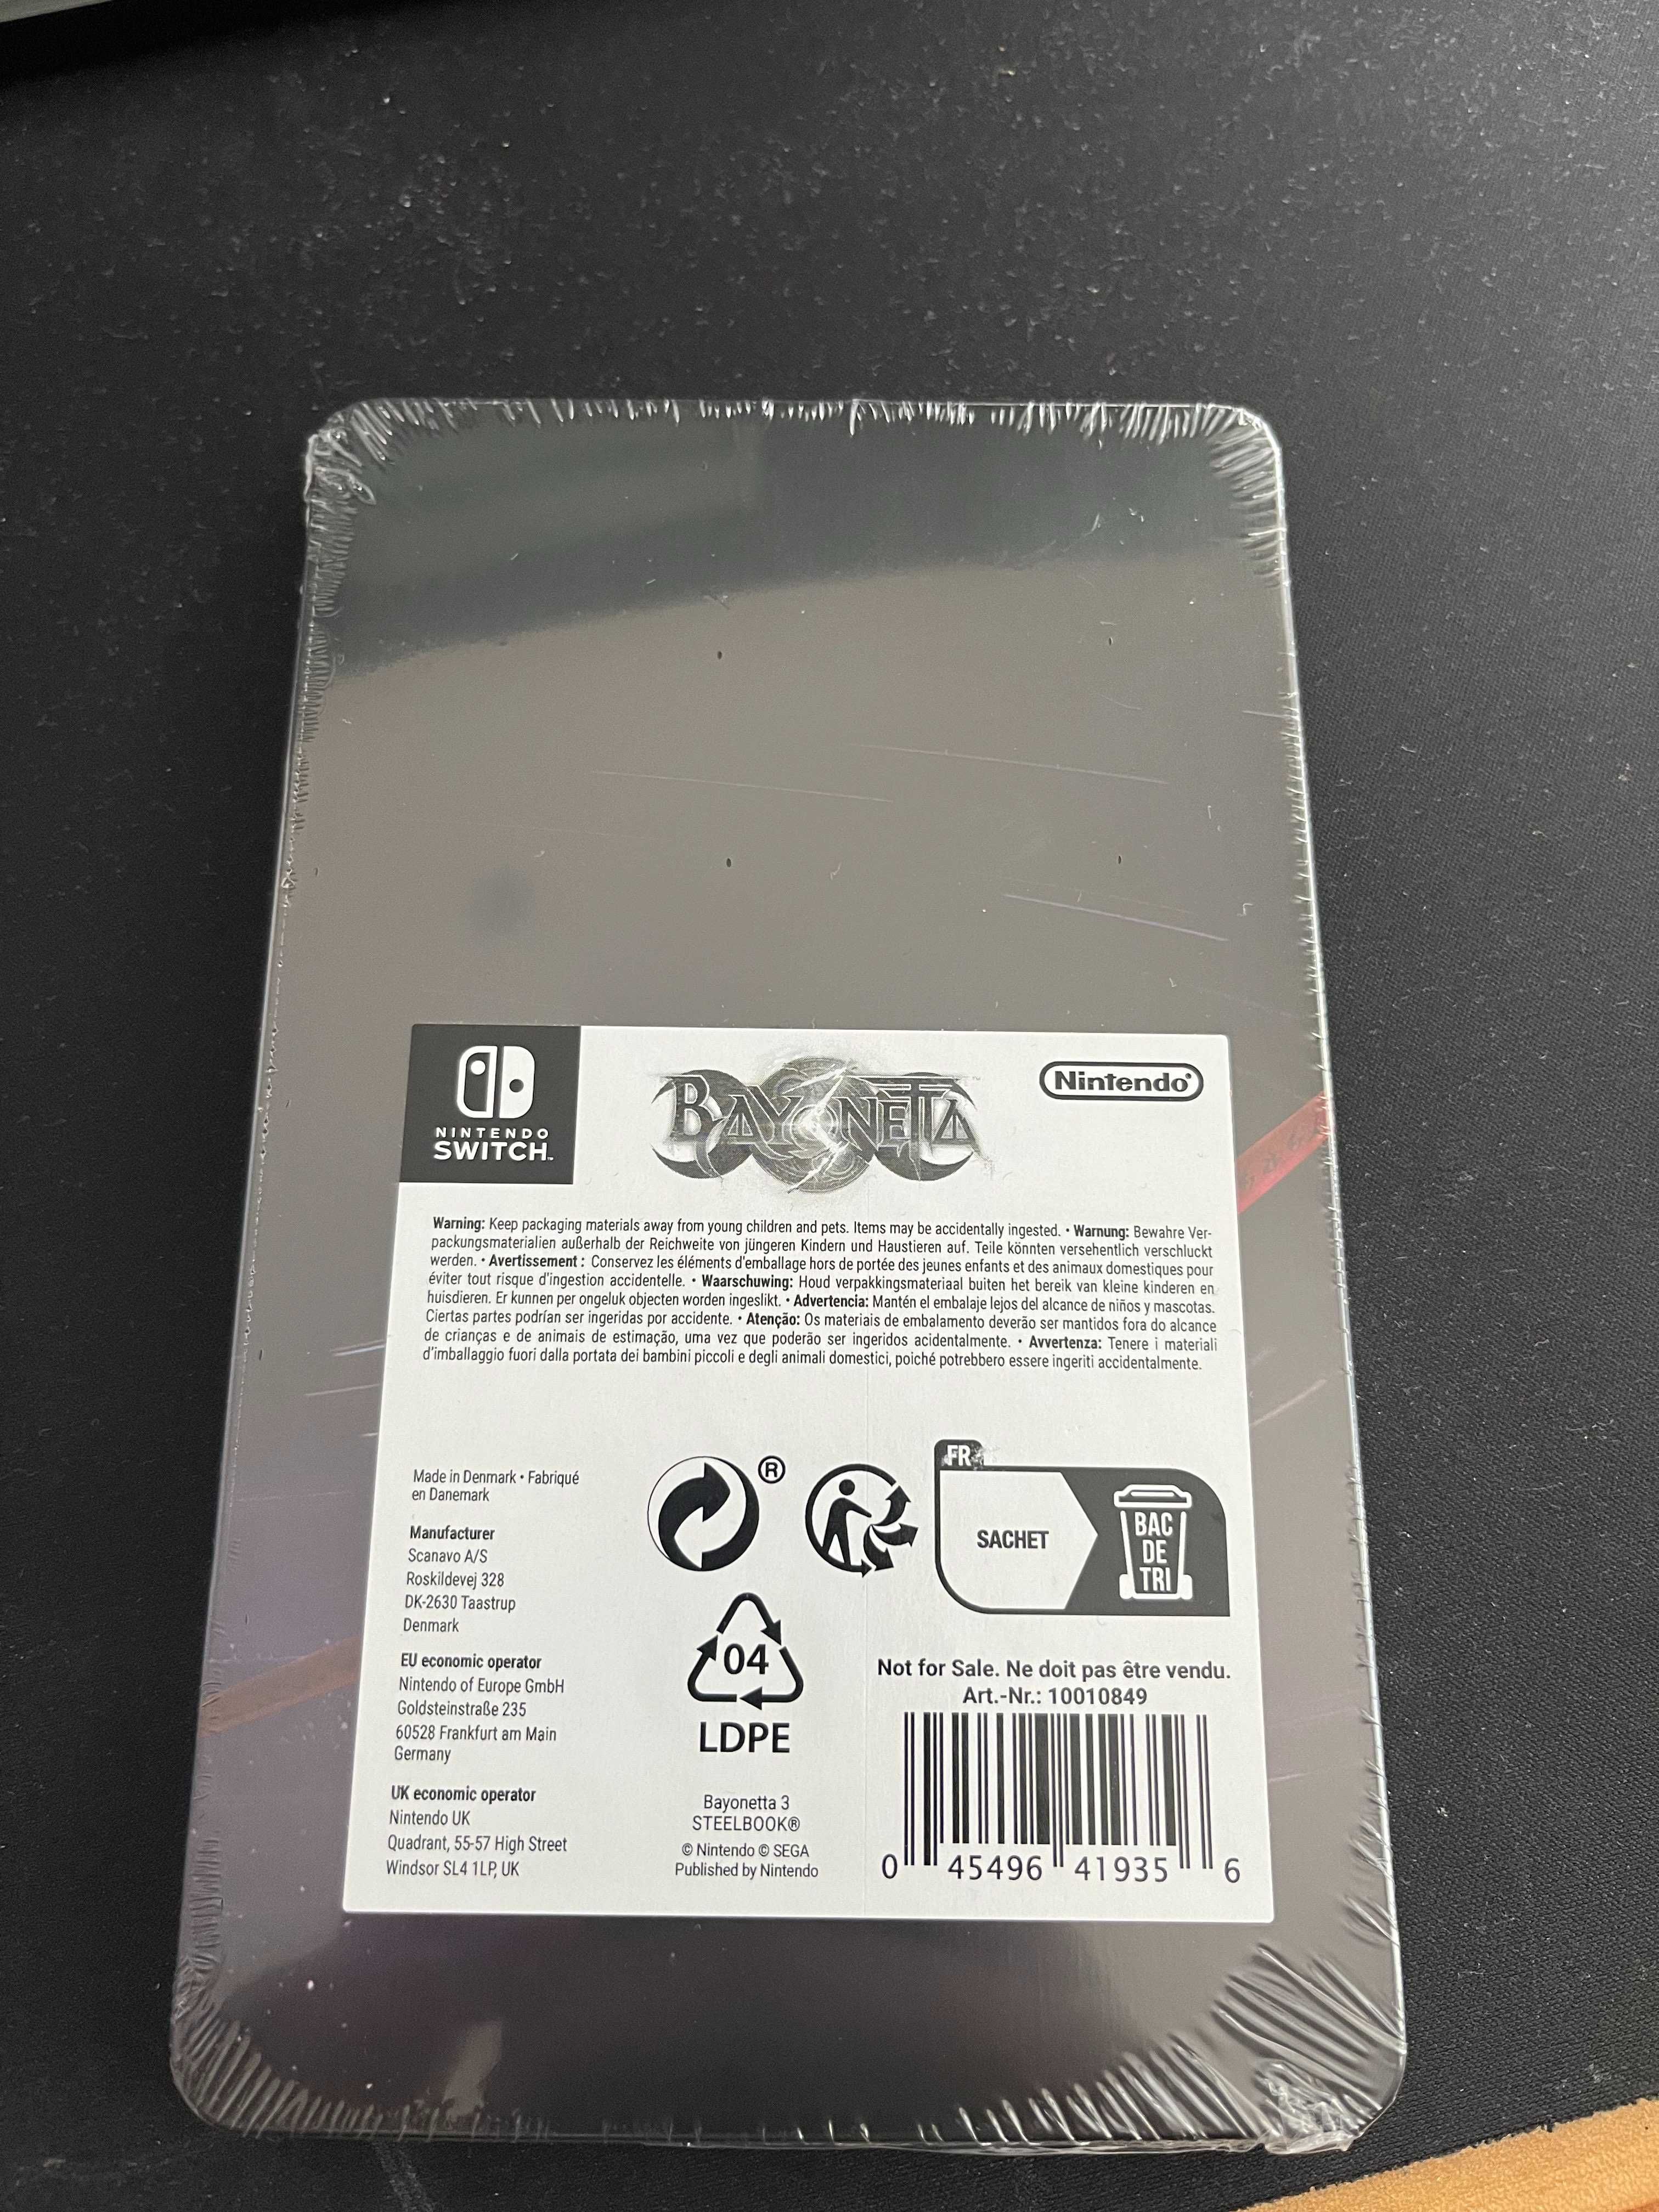 Nintendo Bayonetta game case